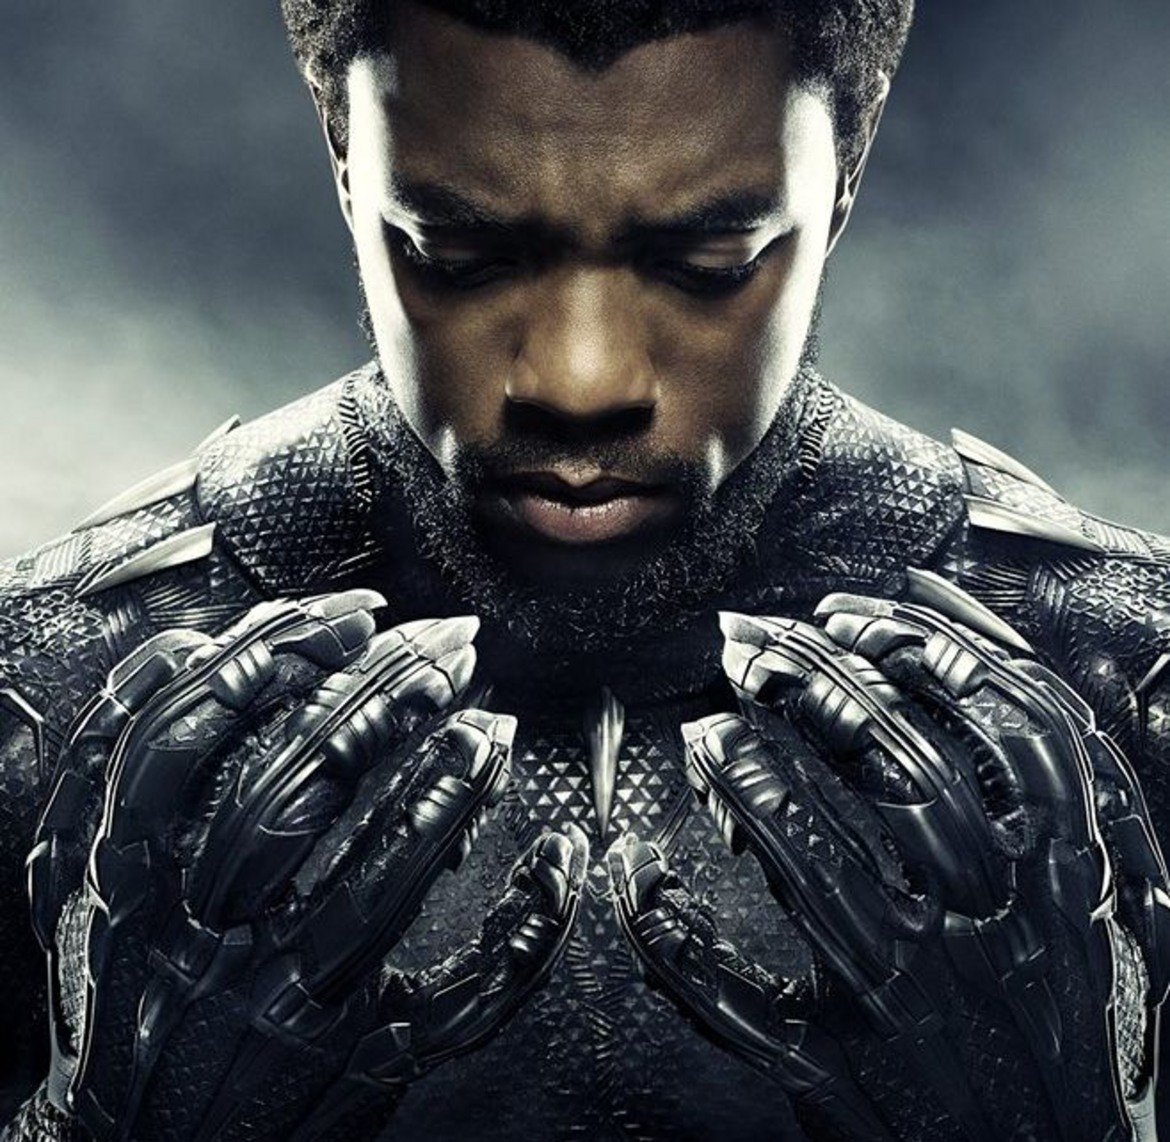 Black Panther (Черната пантера)

Филмът, базиран на комиксите на Marvel, разказва за Т'Чала - крал на измислена, висококотехнологична държава в Африка. С маската на Черната пантера, той трябва да я брани от заплахи както отвън, така и отвътре.